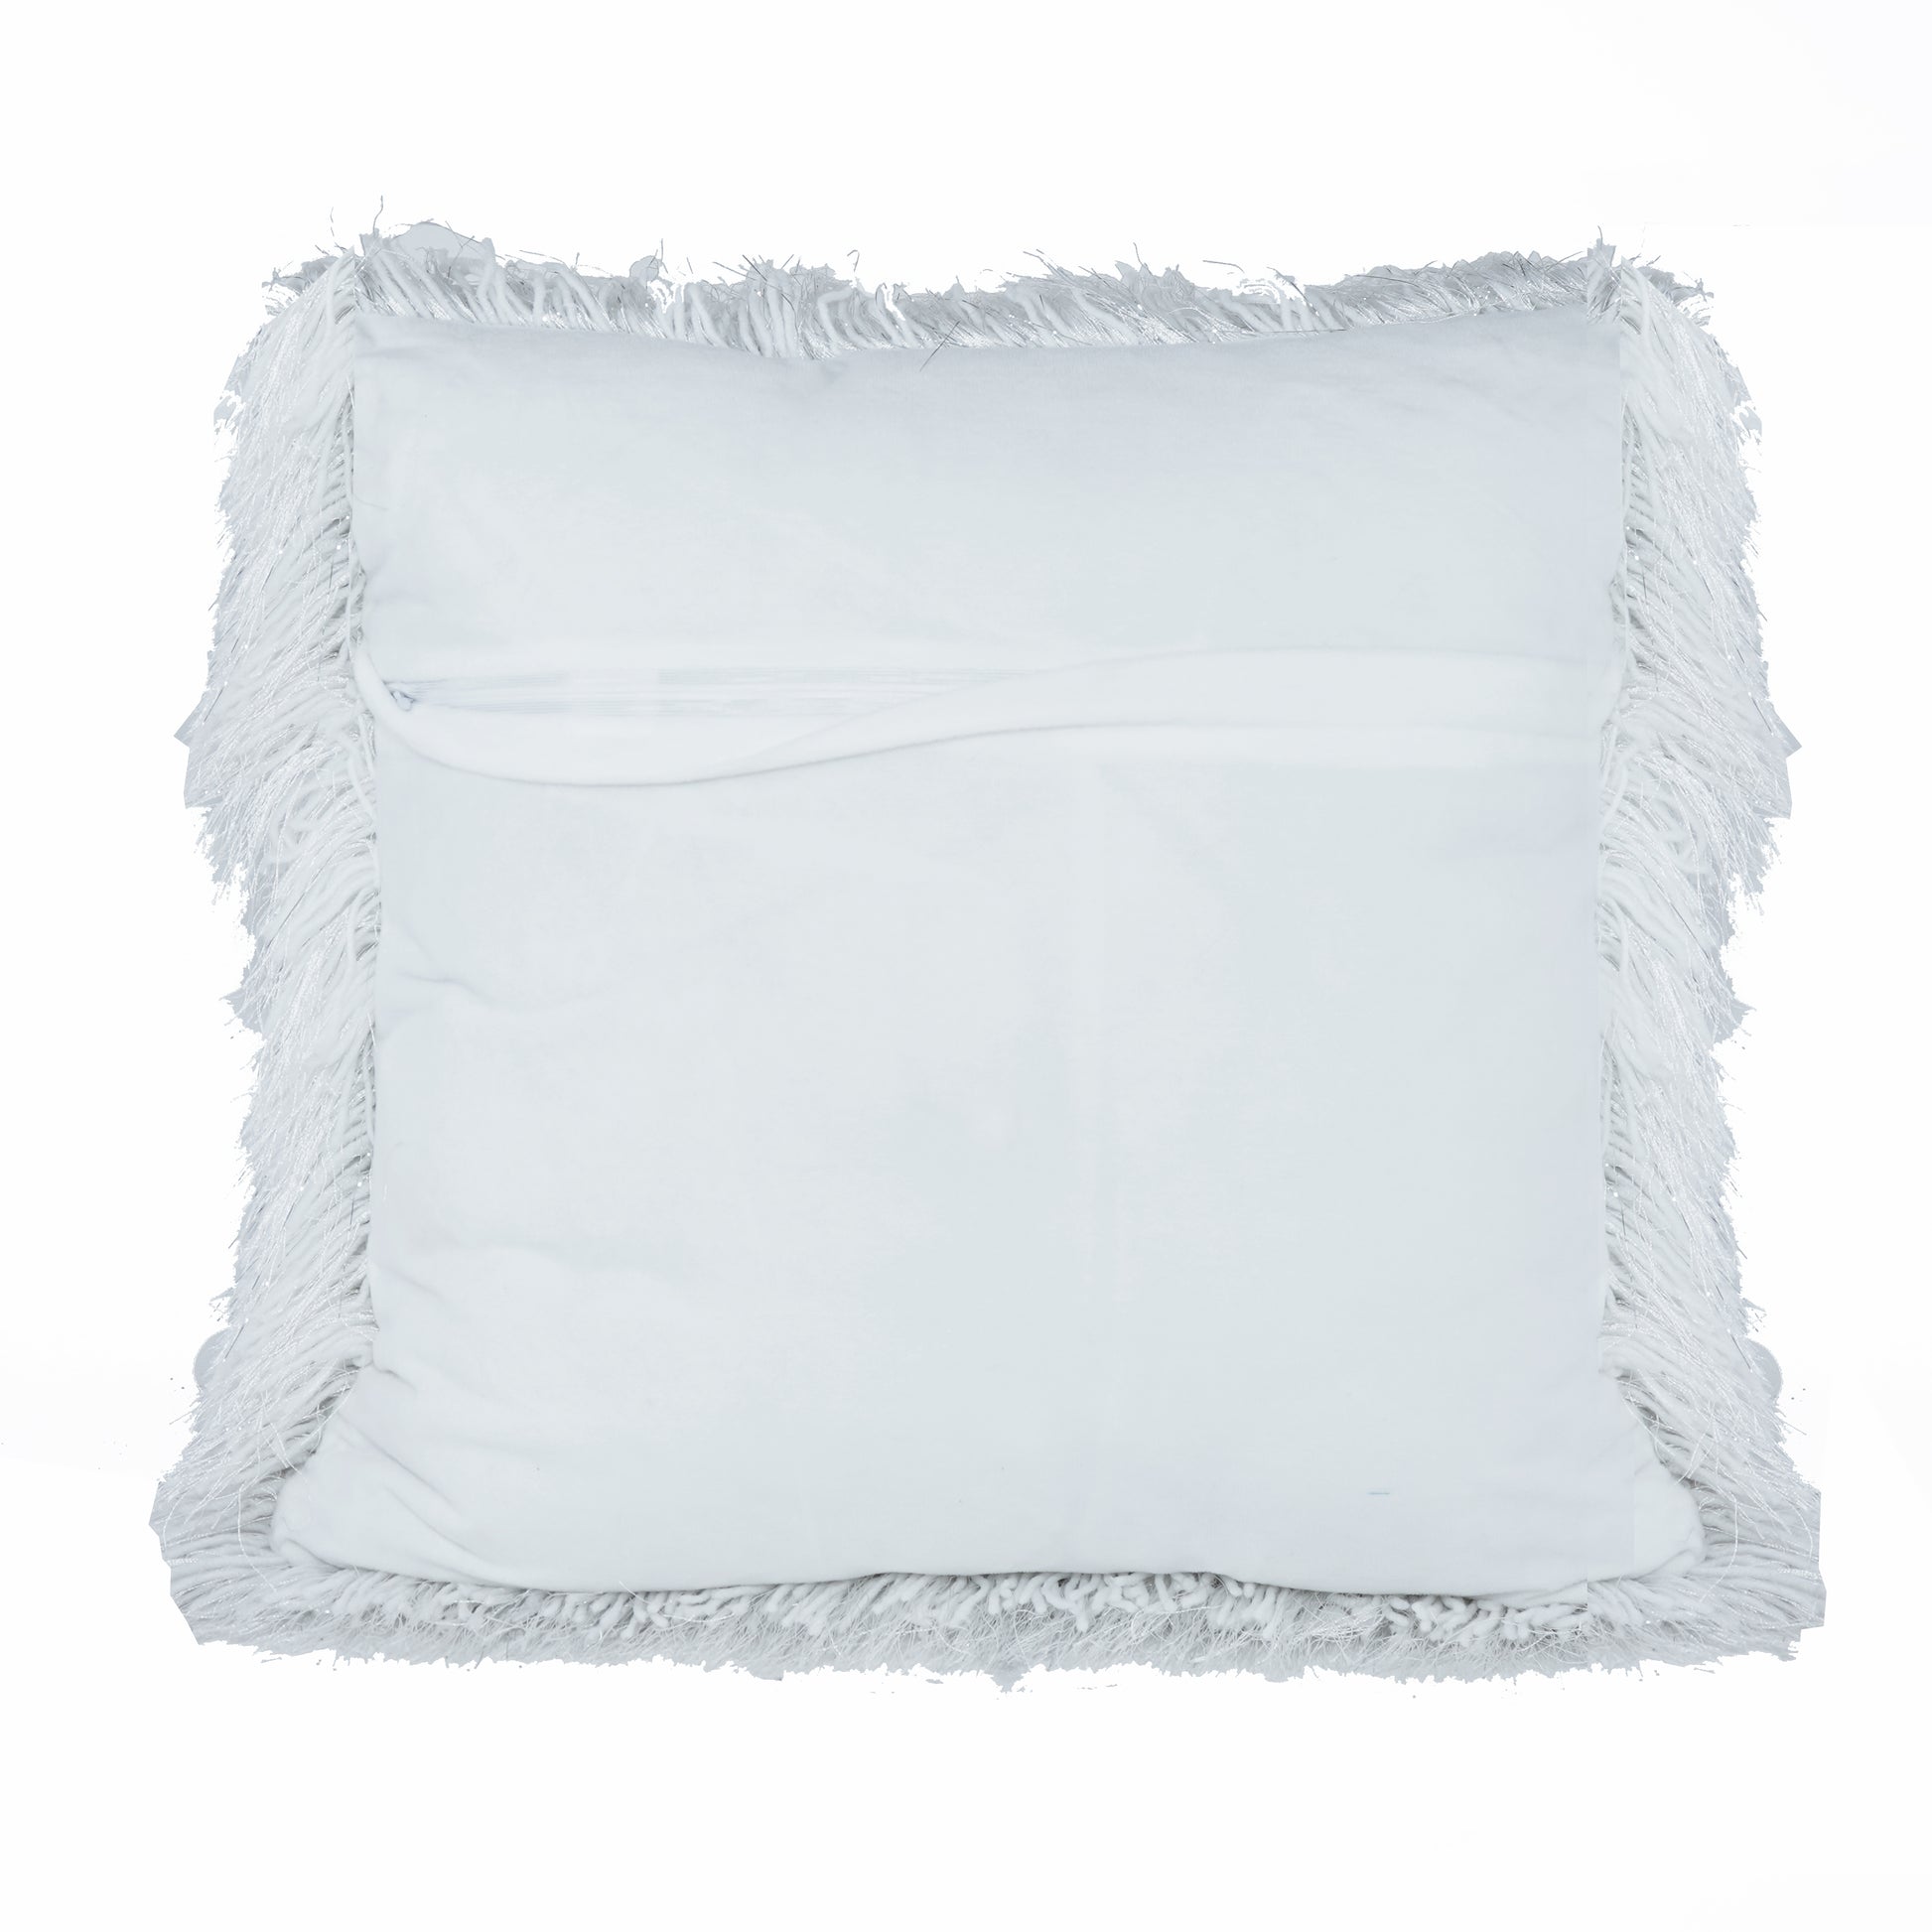 Shaggy Lurex Throw Pillows - Expo Home Decor